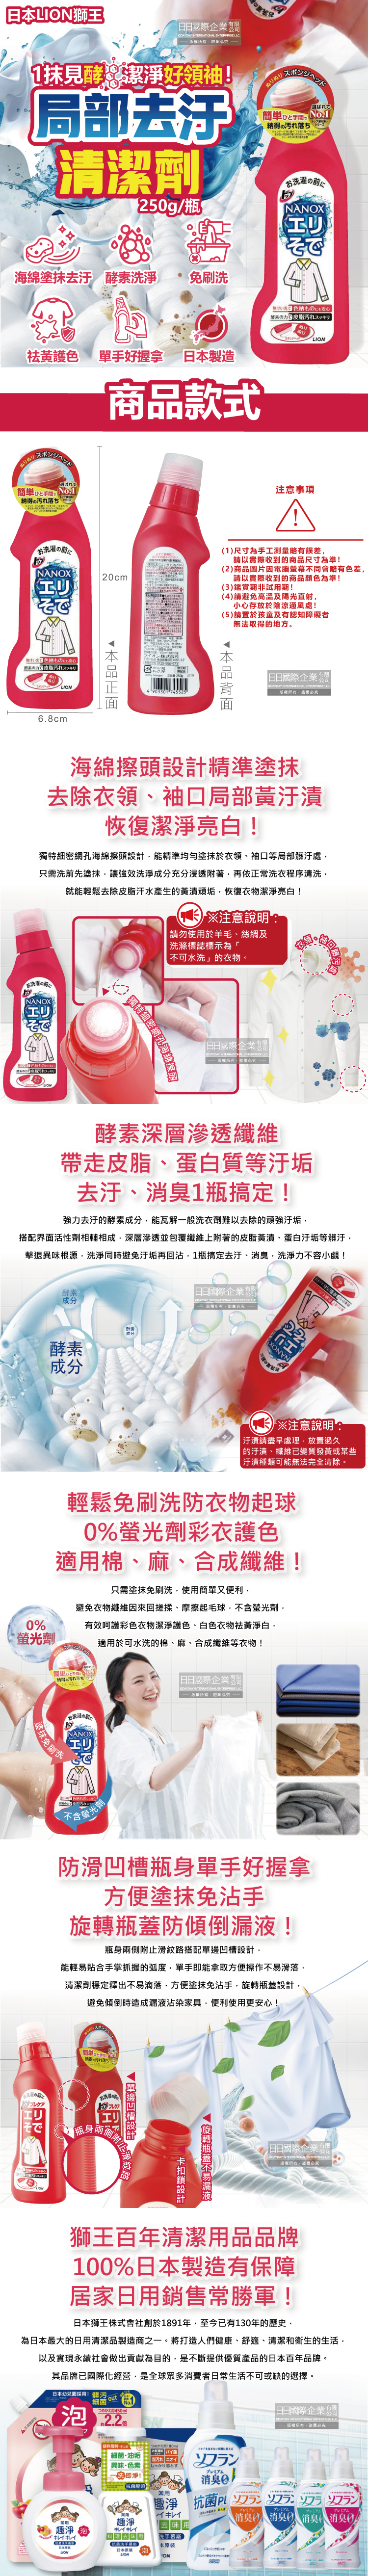 (清潔-衣物)日本LION獅王-衣物局部去汙清潔劑250g紅瓶裝介紹圖